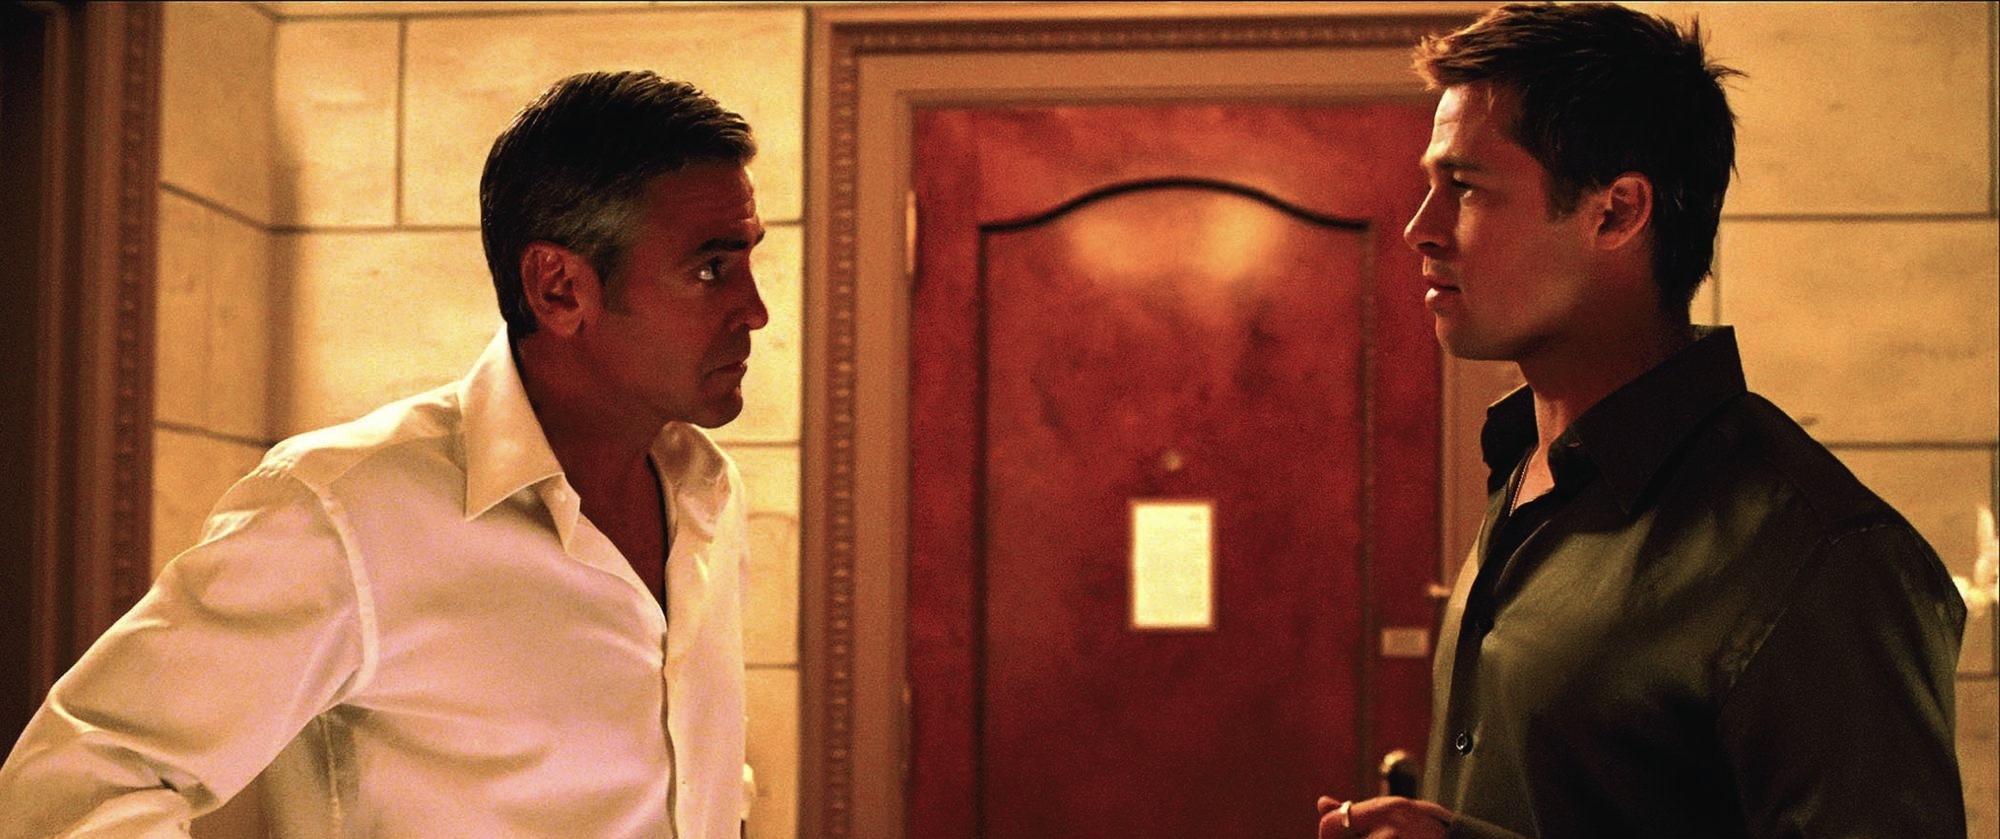 Still of Brad Pitt and George Clooney in Ocean's Thirteen (2007)